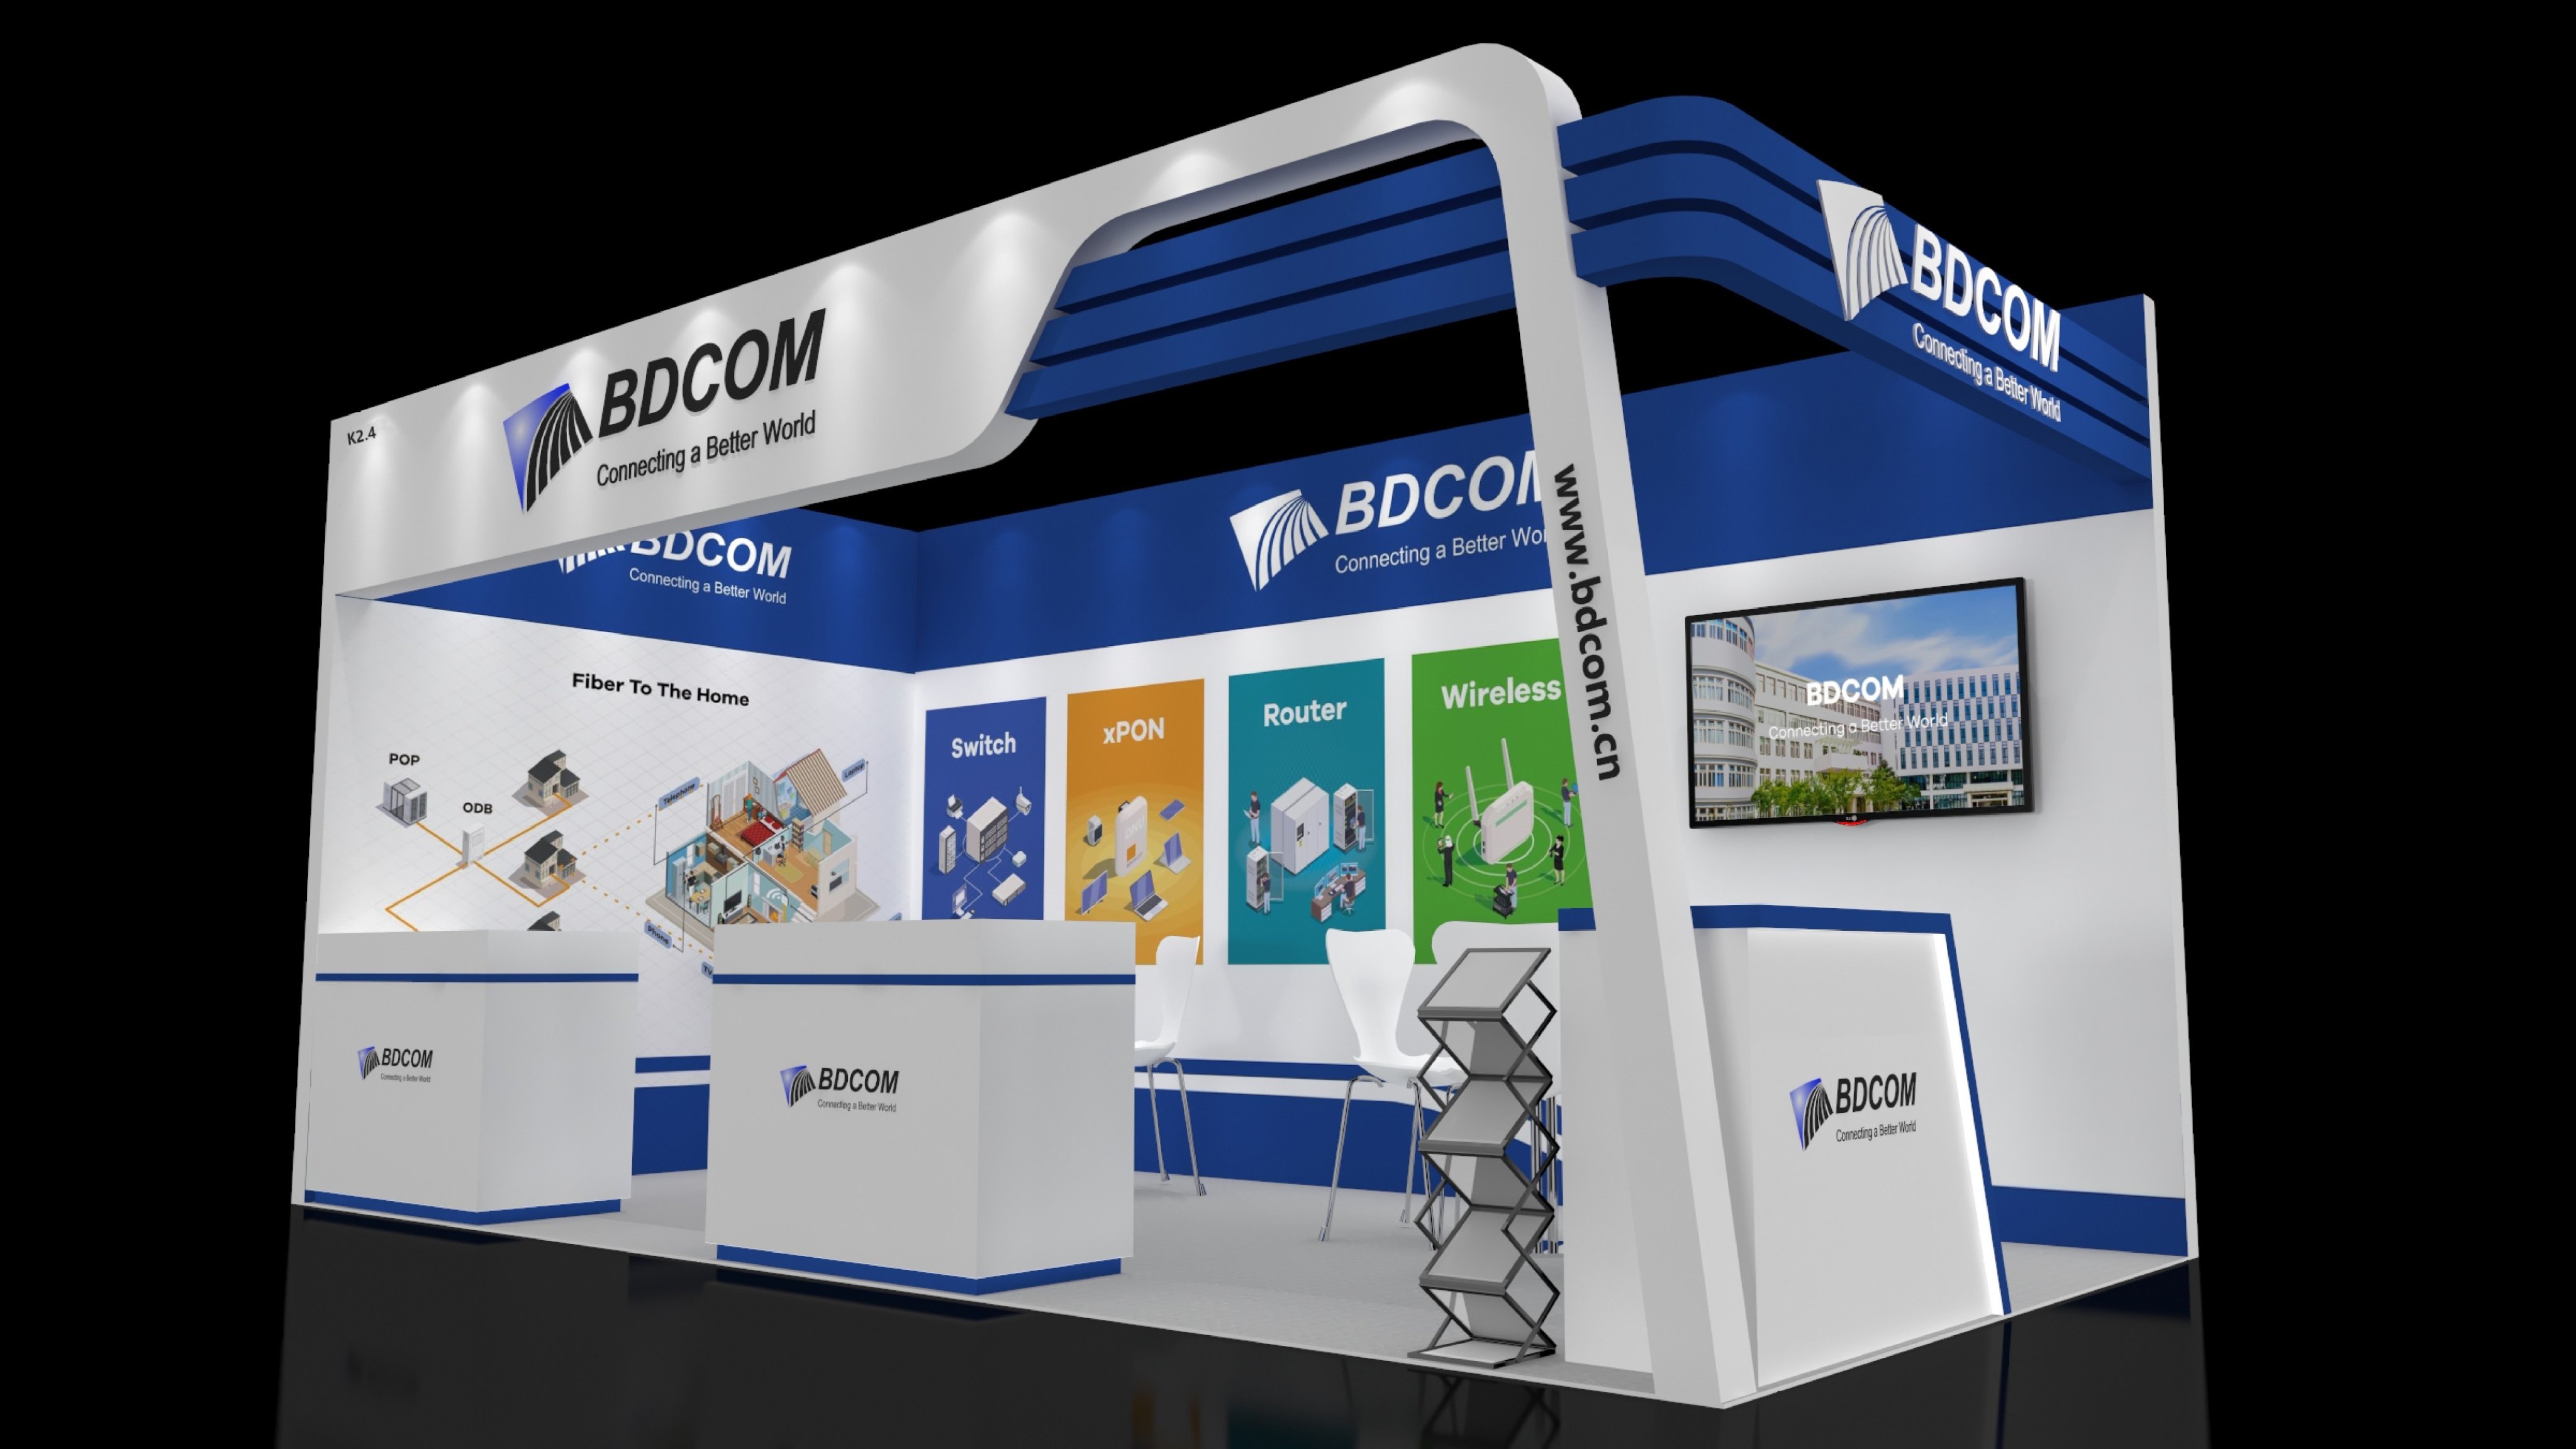 Gian hàng BDCOM được Gia Long thi công hoàn thiện - The BDCOM booth was completed by Gia Long.